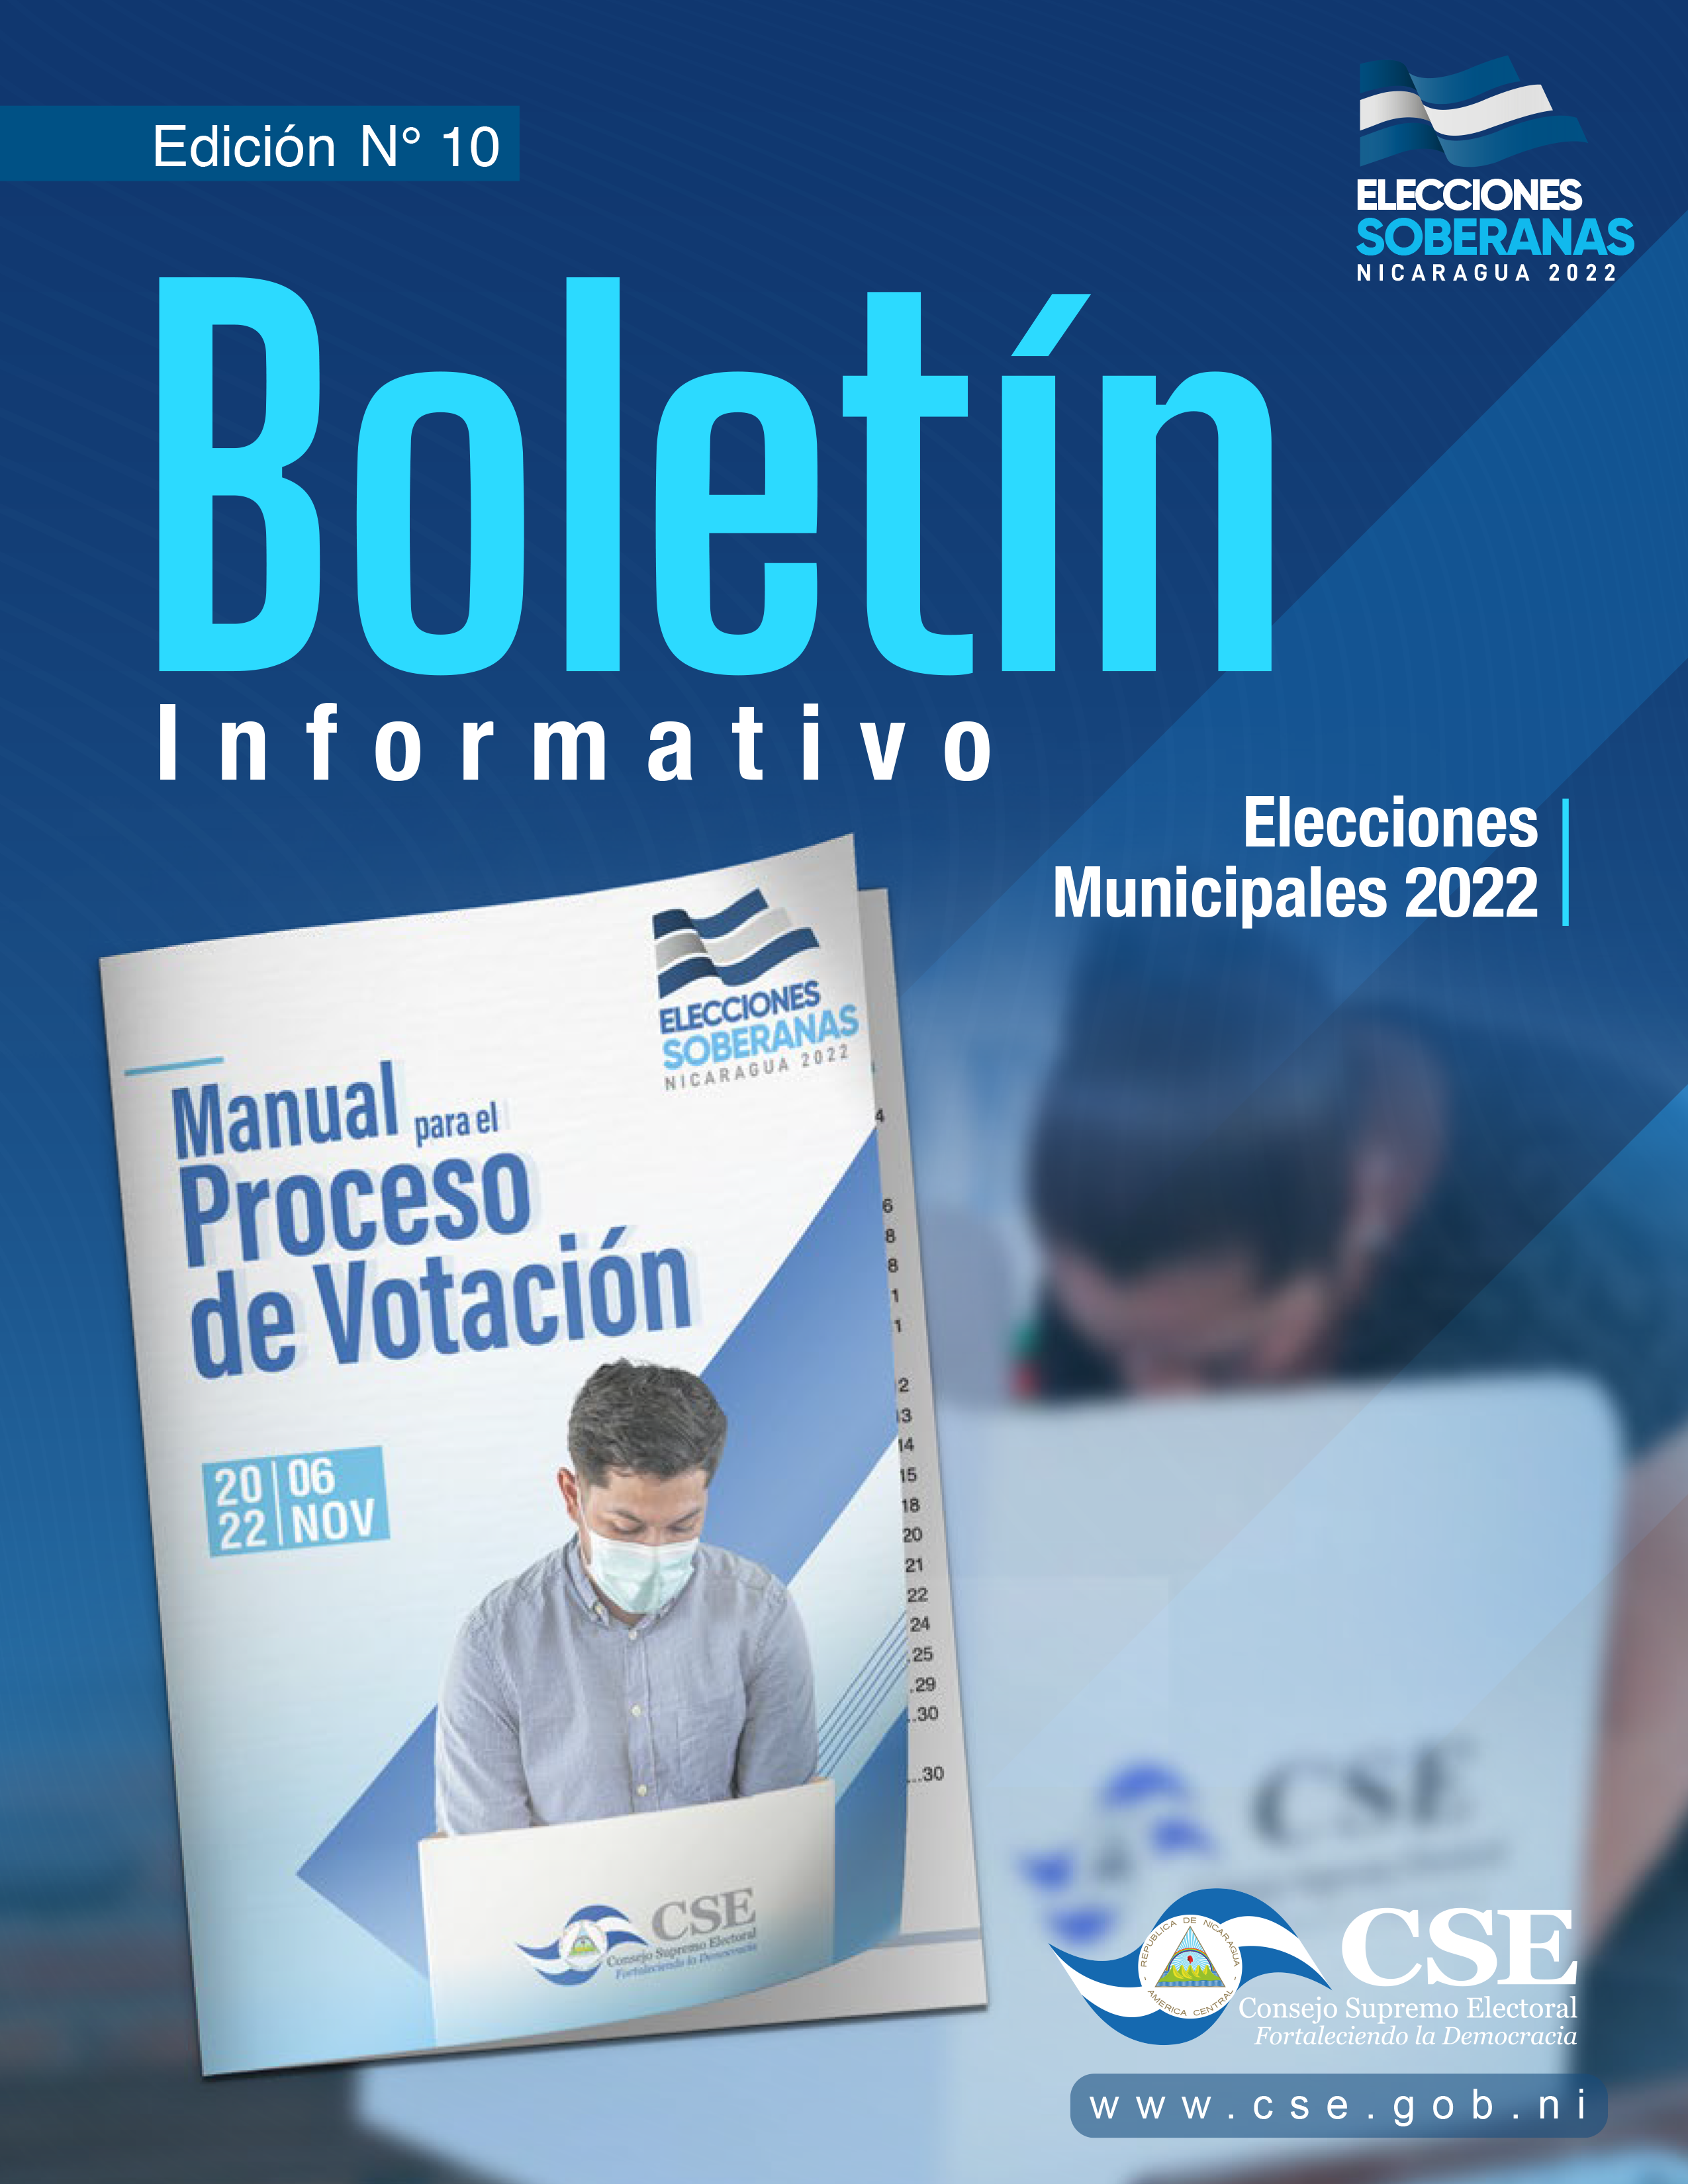 Boletín-Informativo-edicion10-Elecciones-Municipales-2022